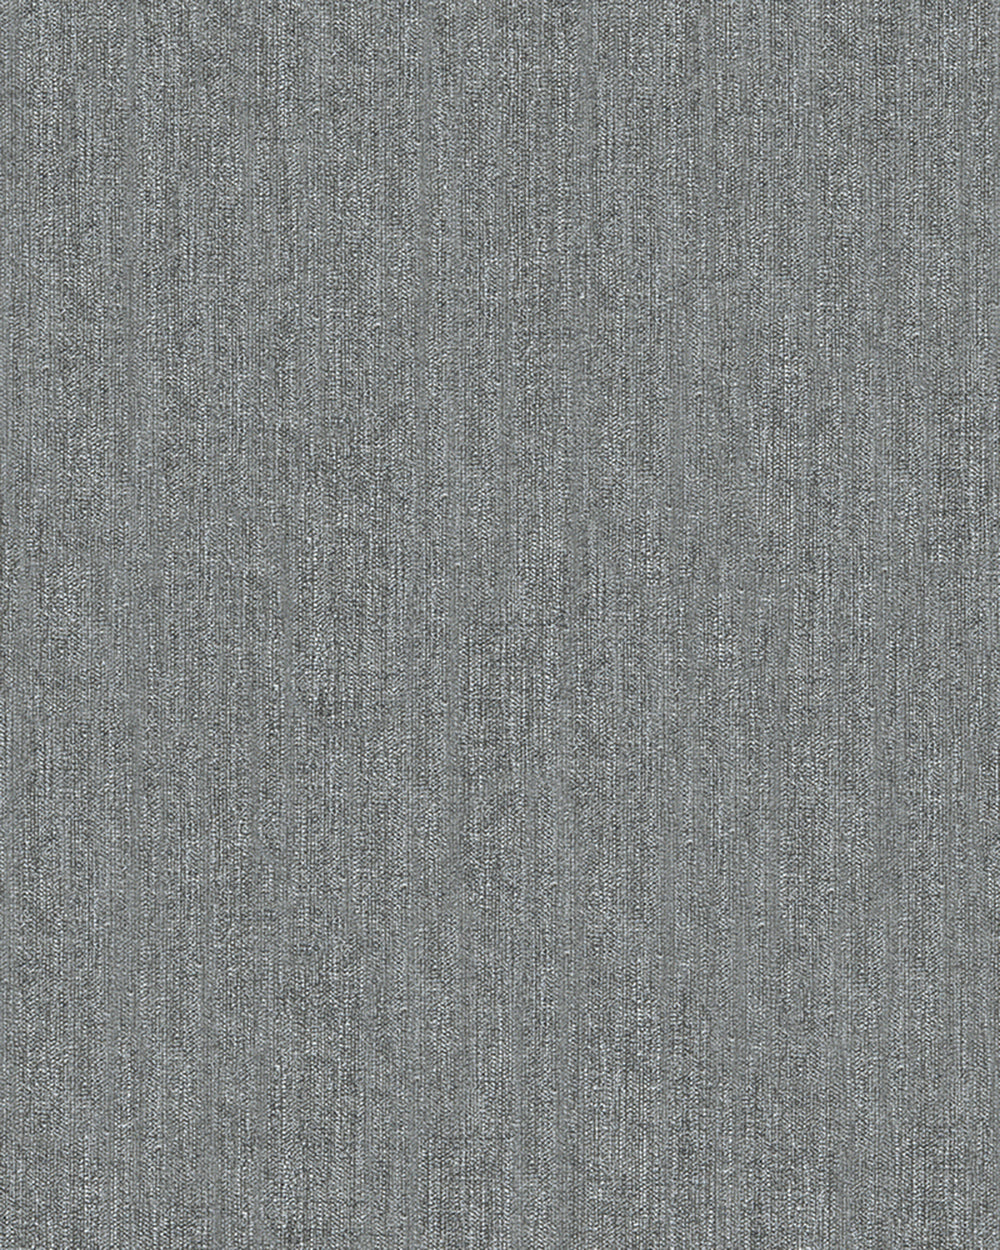 Schoner Wohnen New Modern - Natural plains plain wallpaper Marburg Roll Dark Grey  31815